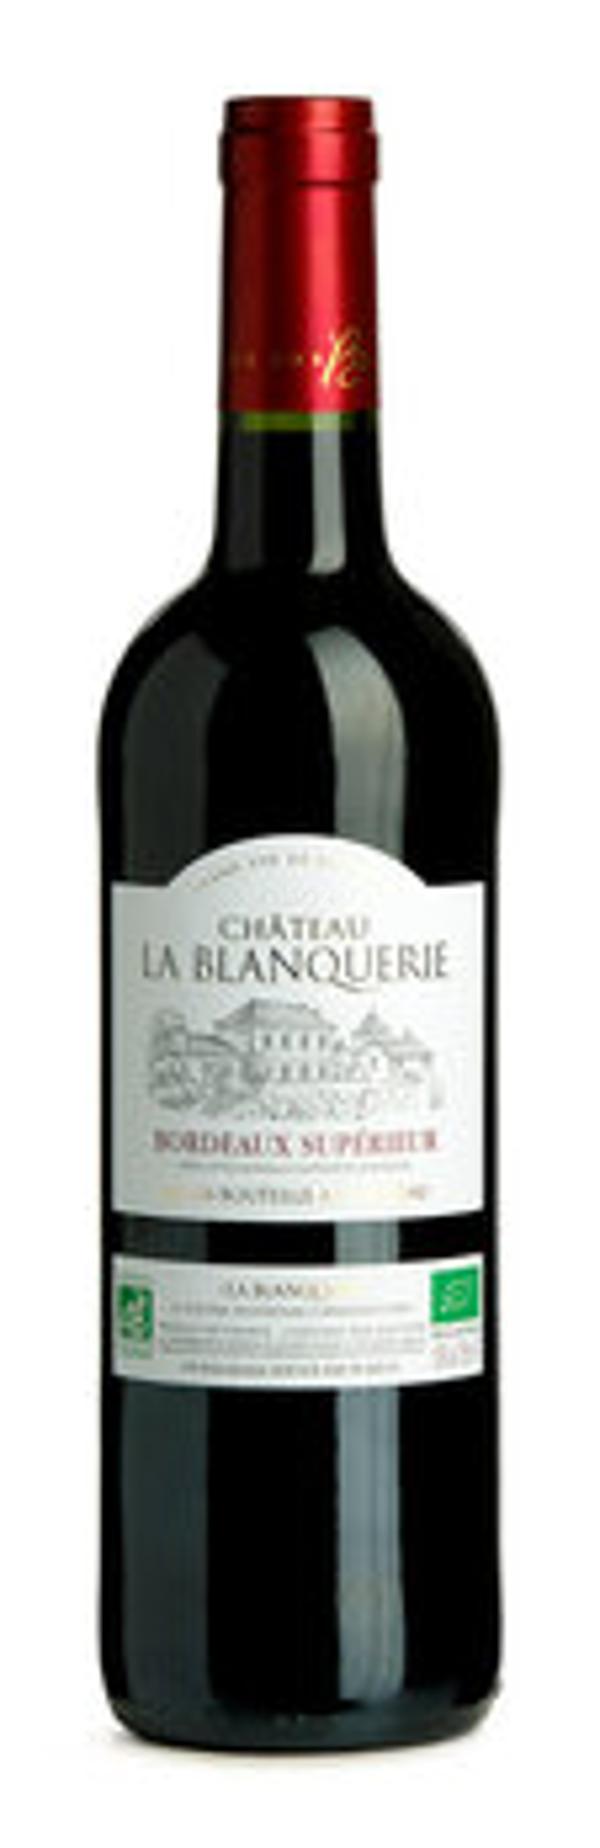 Produktfoto zu Bordeaux Supérieur rot, 0,75 l